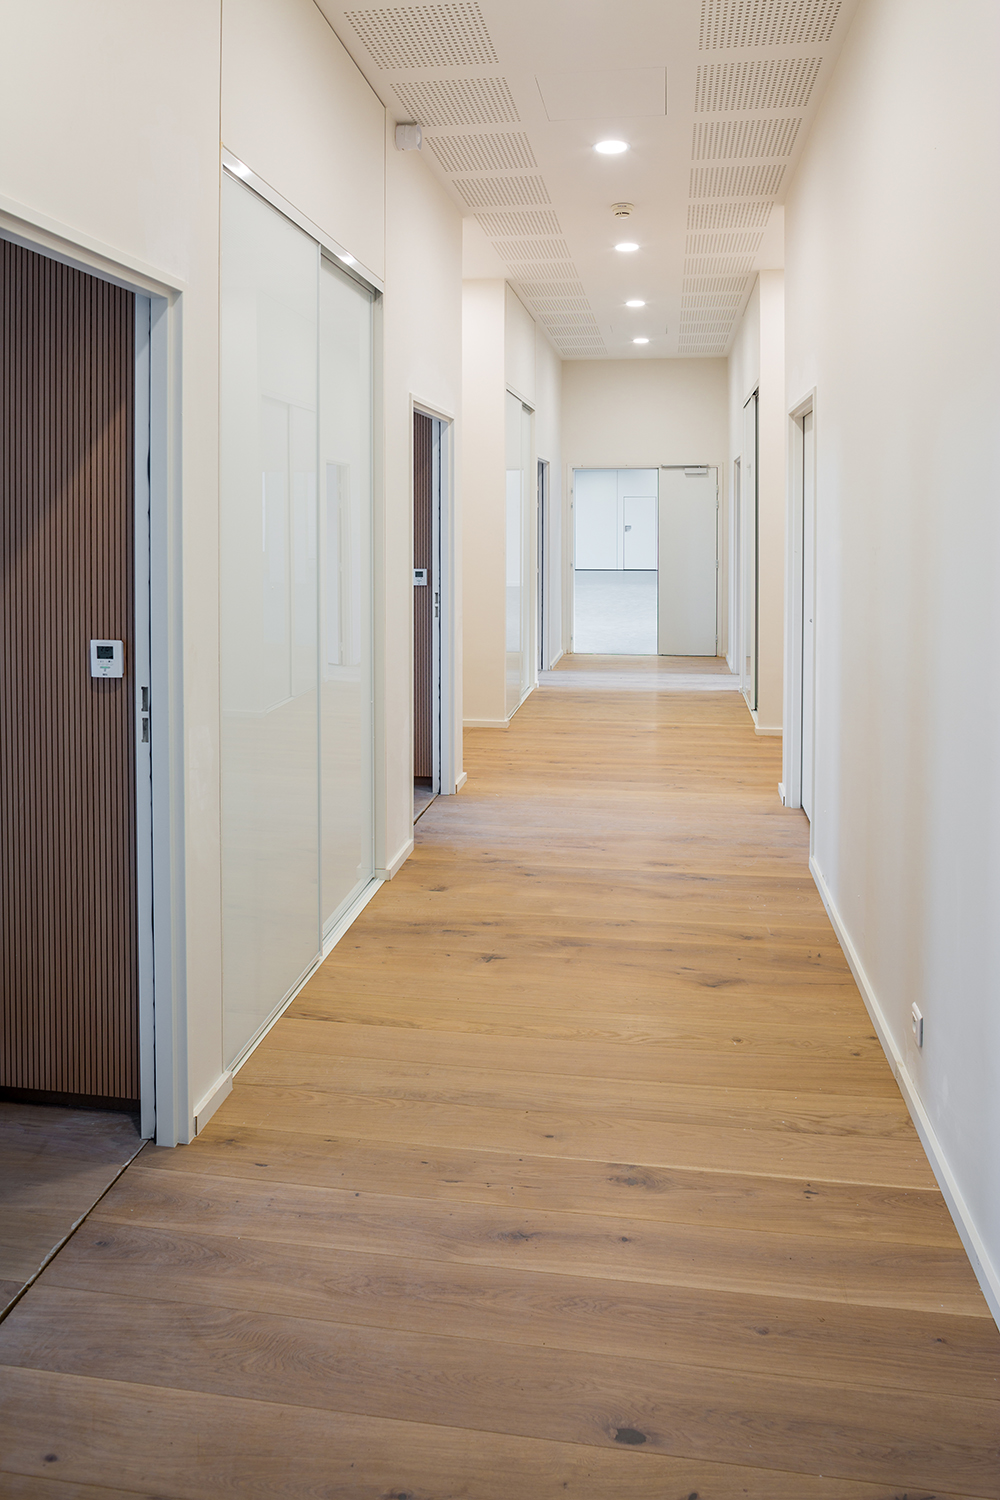 Un couloir avec un parquet en bois qui dessert différents bureaux